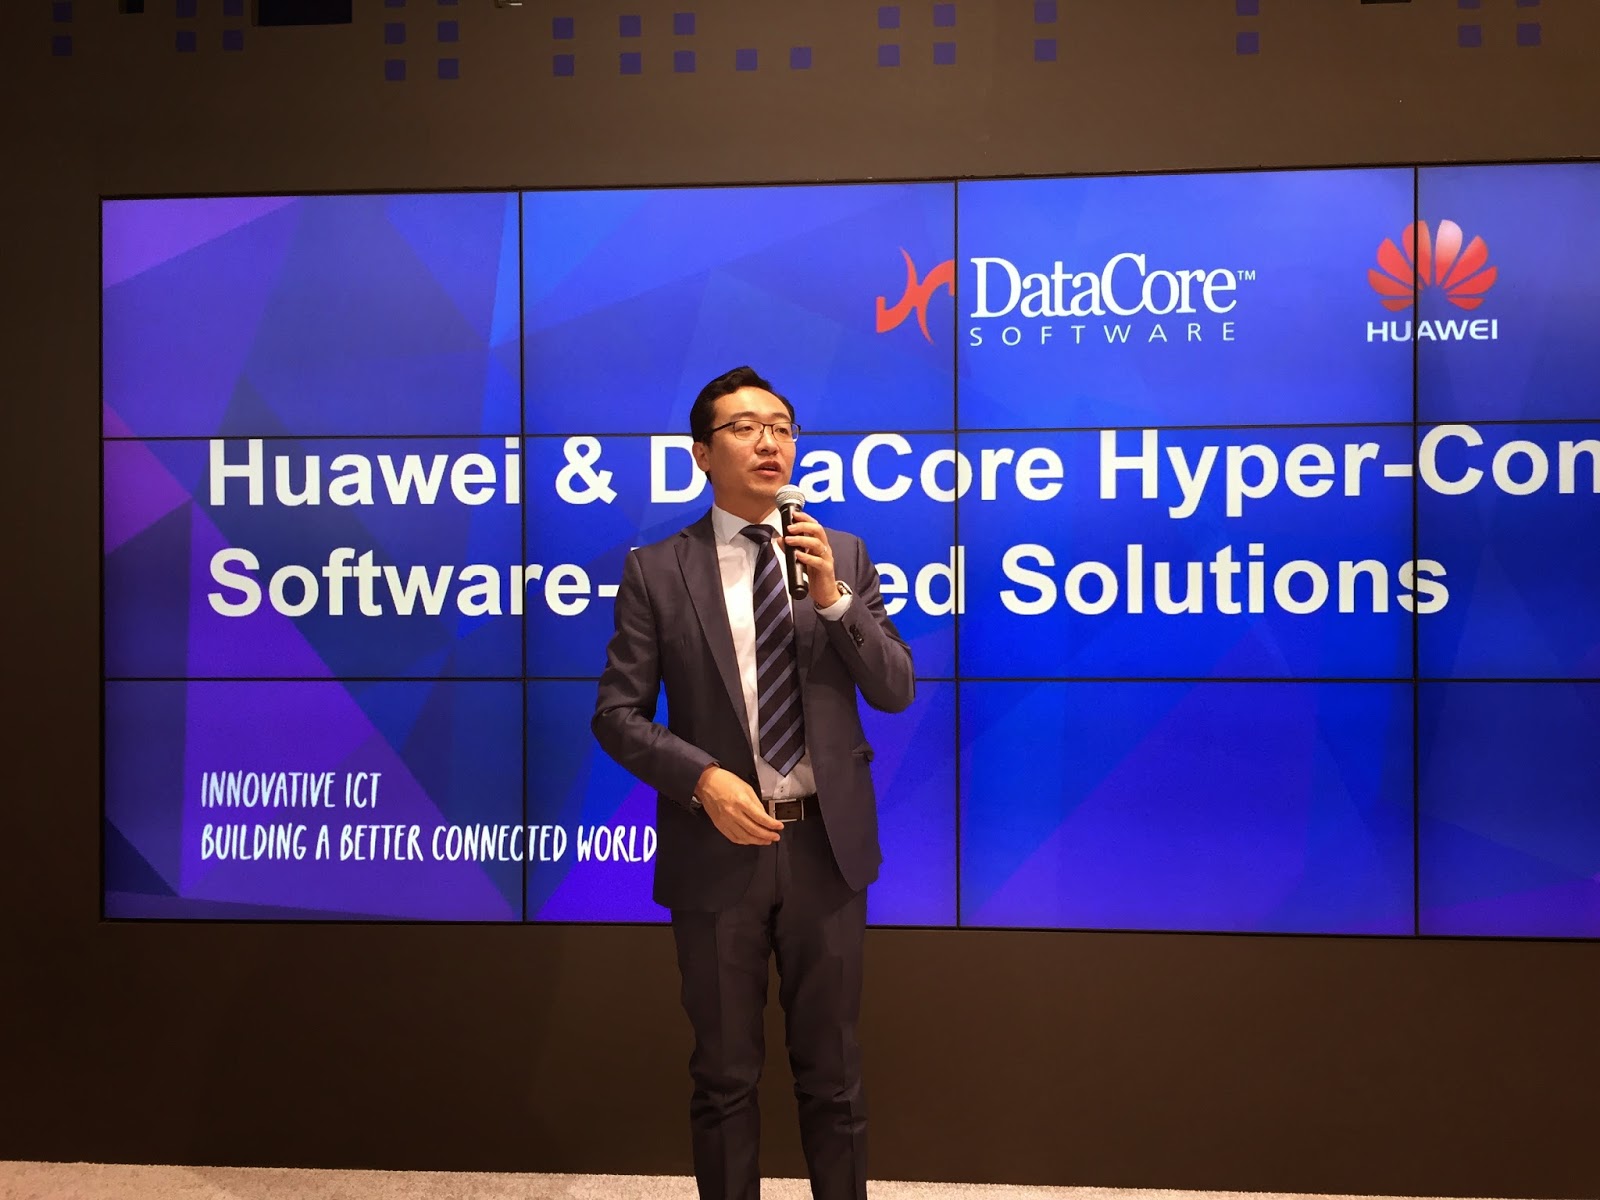 Huawei et DataCore Software annonce le lancement d’une nouvelle gamme de systèmes hyper convergents